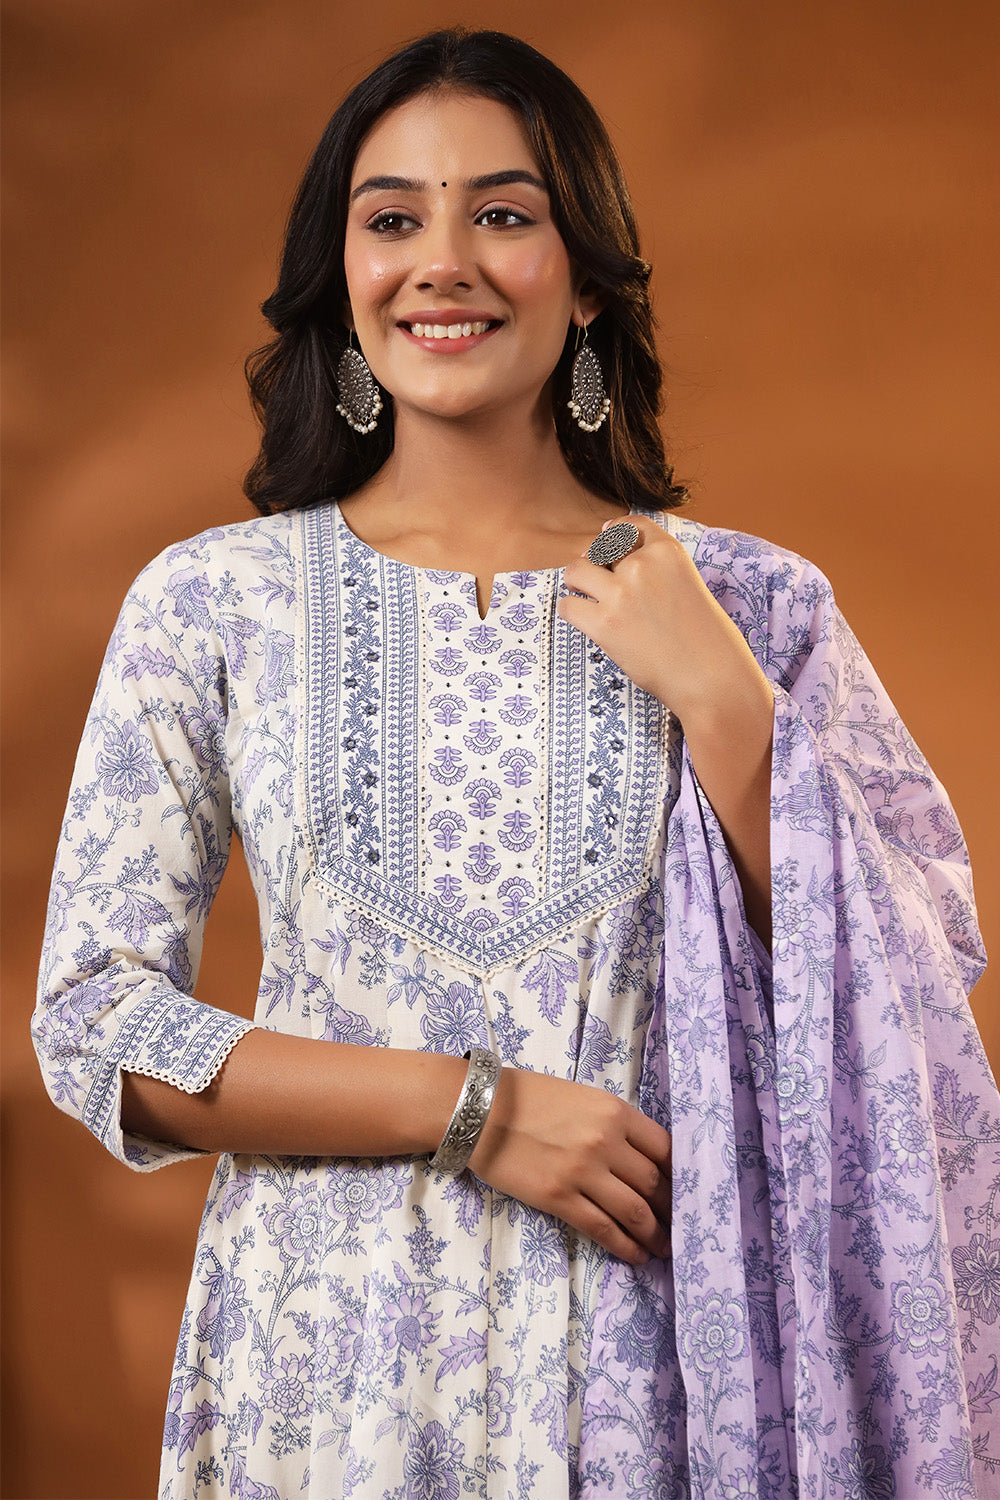 Cream & Lavender Color Floral Printed Cotton Anarkali Suit